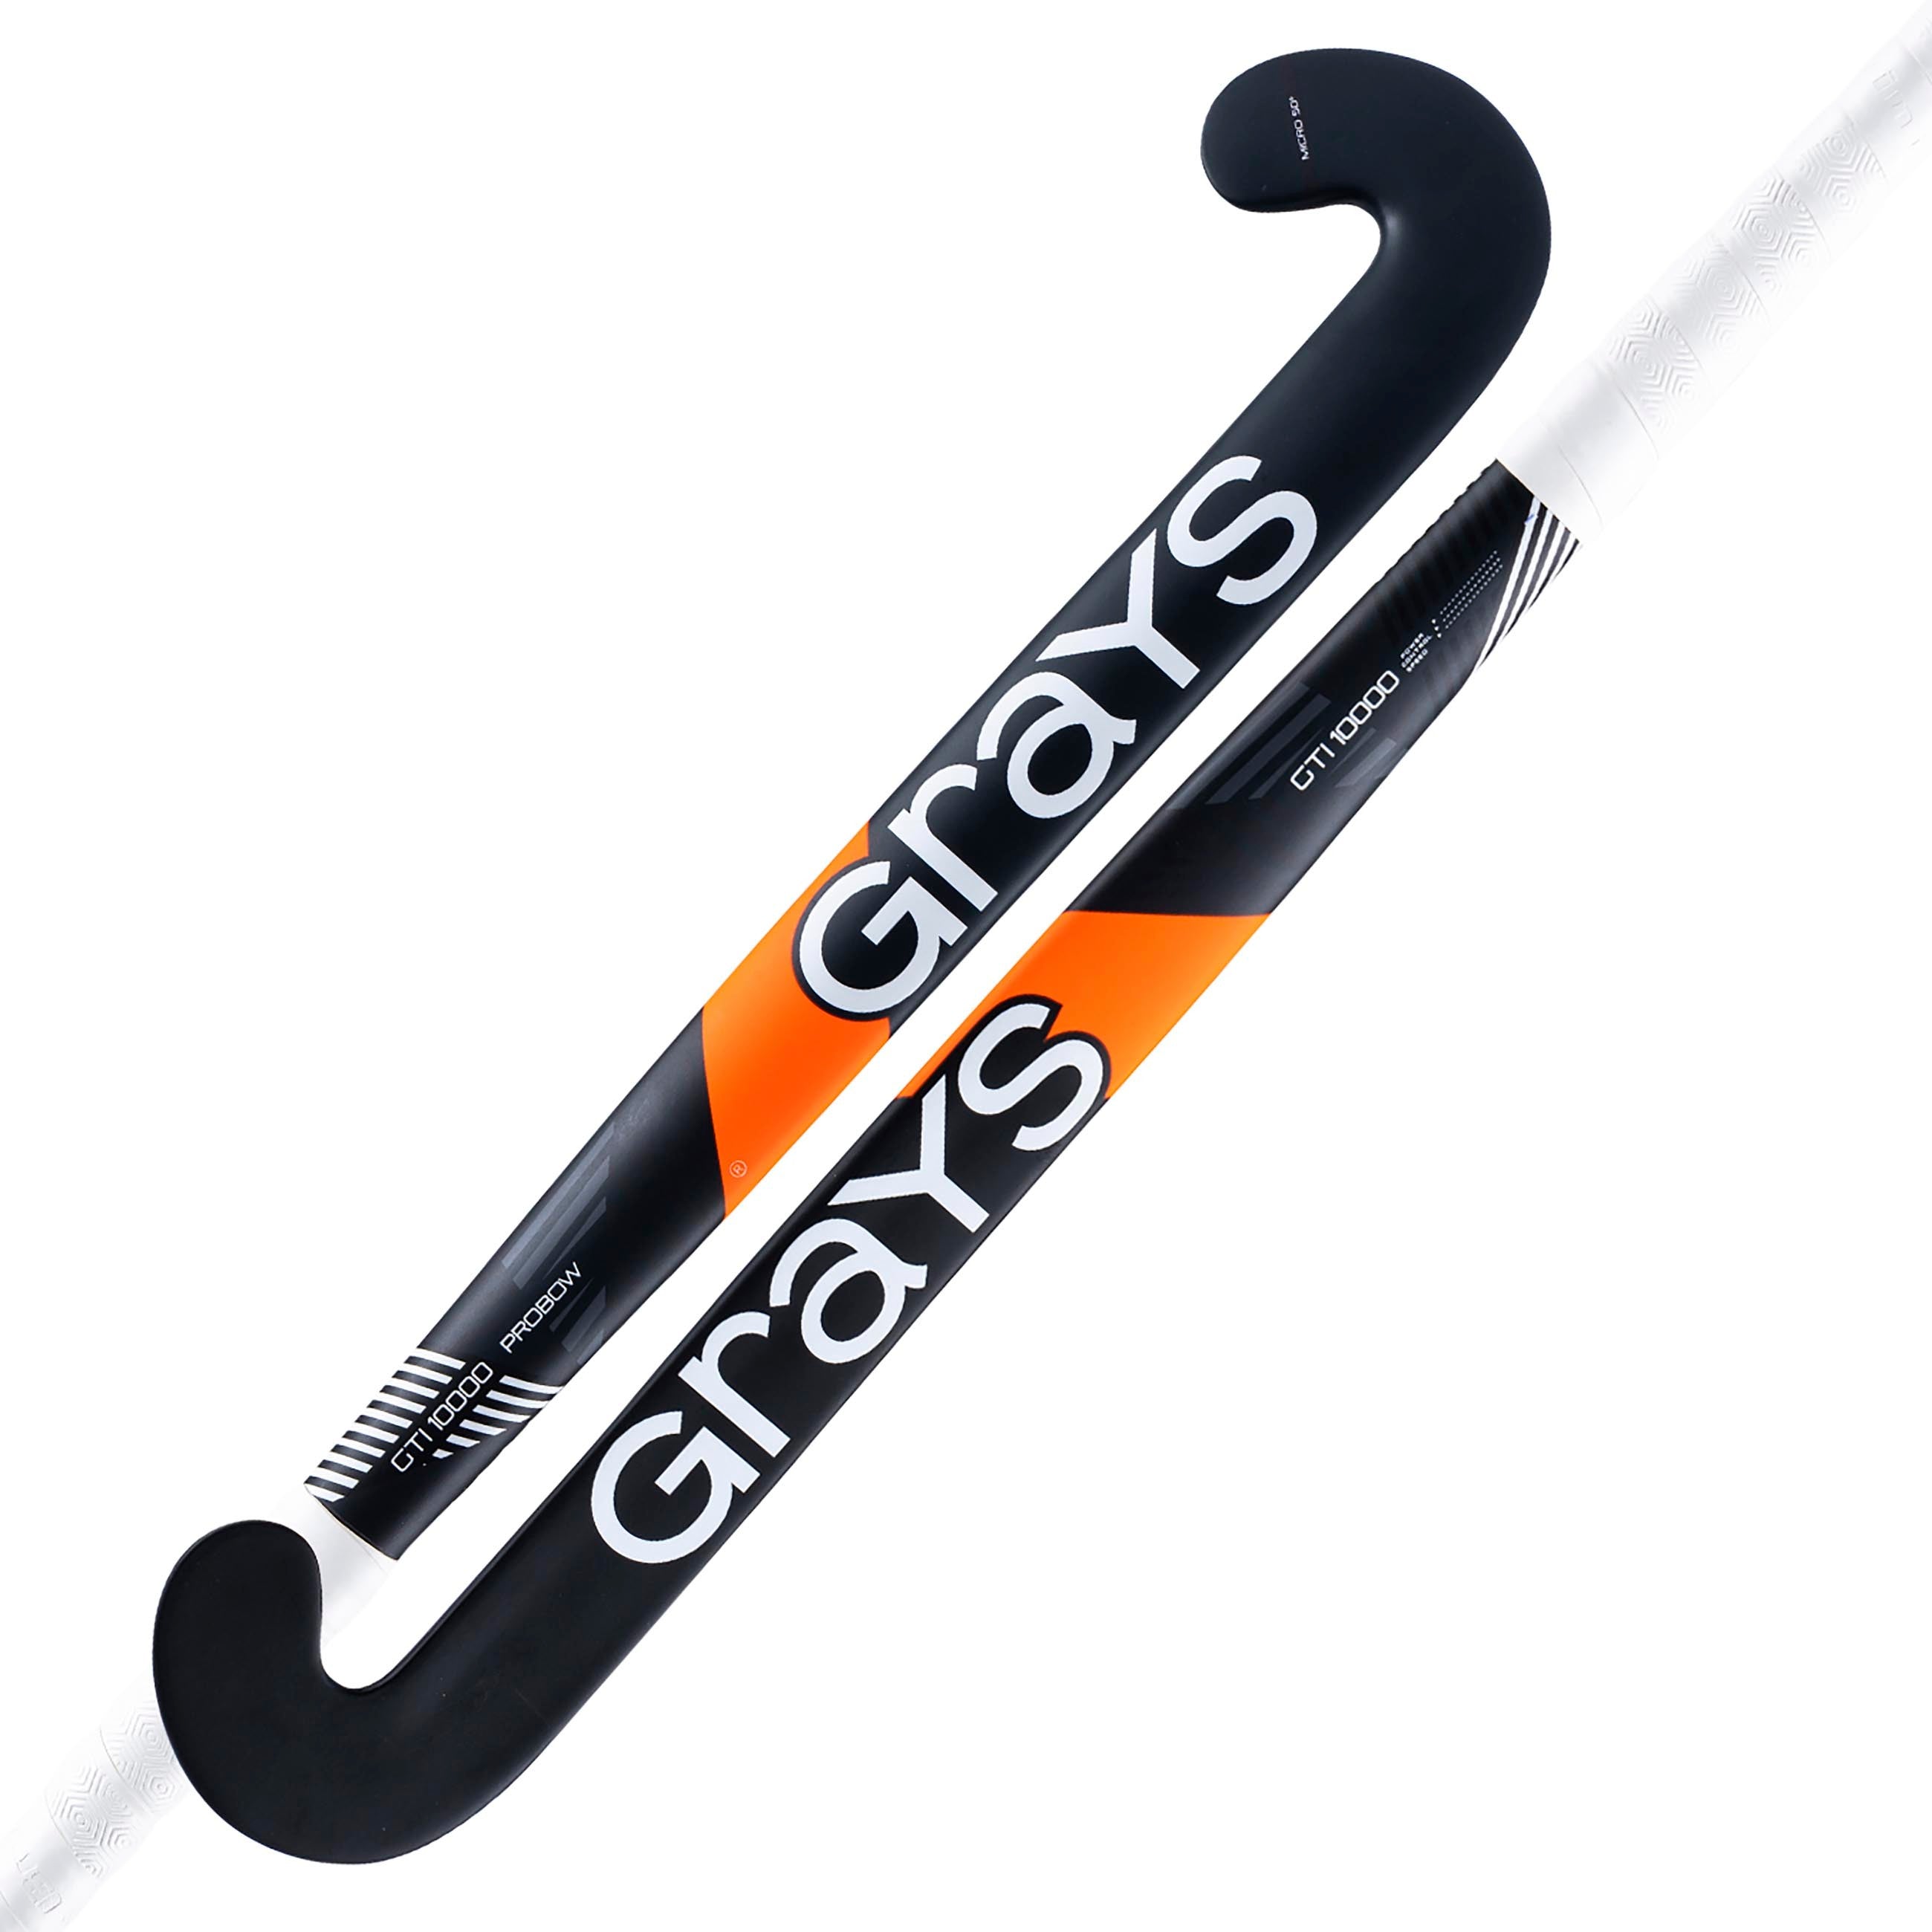 GTI10000 Probow Composite Indoor Hockey Stick